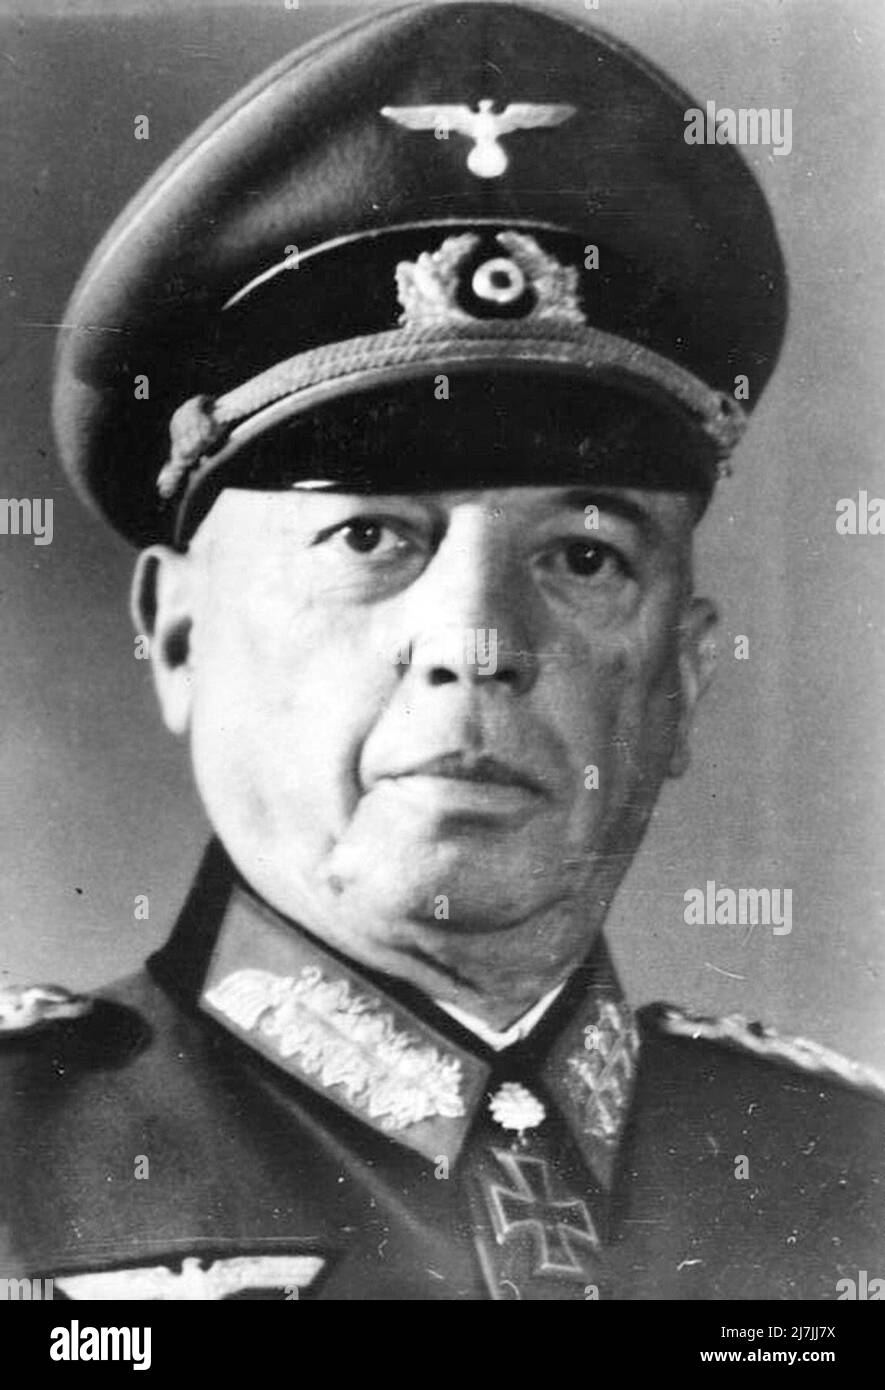 Georg Carl Wilhelm Friedrich von Küchler était un maréchal allemand pendant la Seconde Guerre mondiale Il commanda l'Armée et le Groupe d'Armée du Nord de 18th pendant la guerre entre l'URSS et l'Allemagne de 1941-1945. Après la guerre, il a été reconnu coupable de crimes contre l'humanité et a passé 50years en prison. Banque D'Images